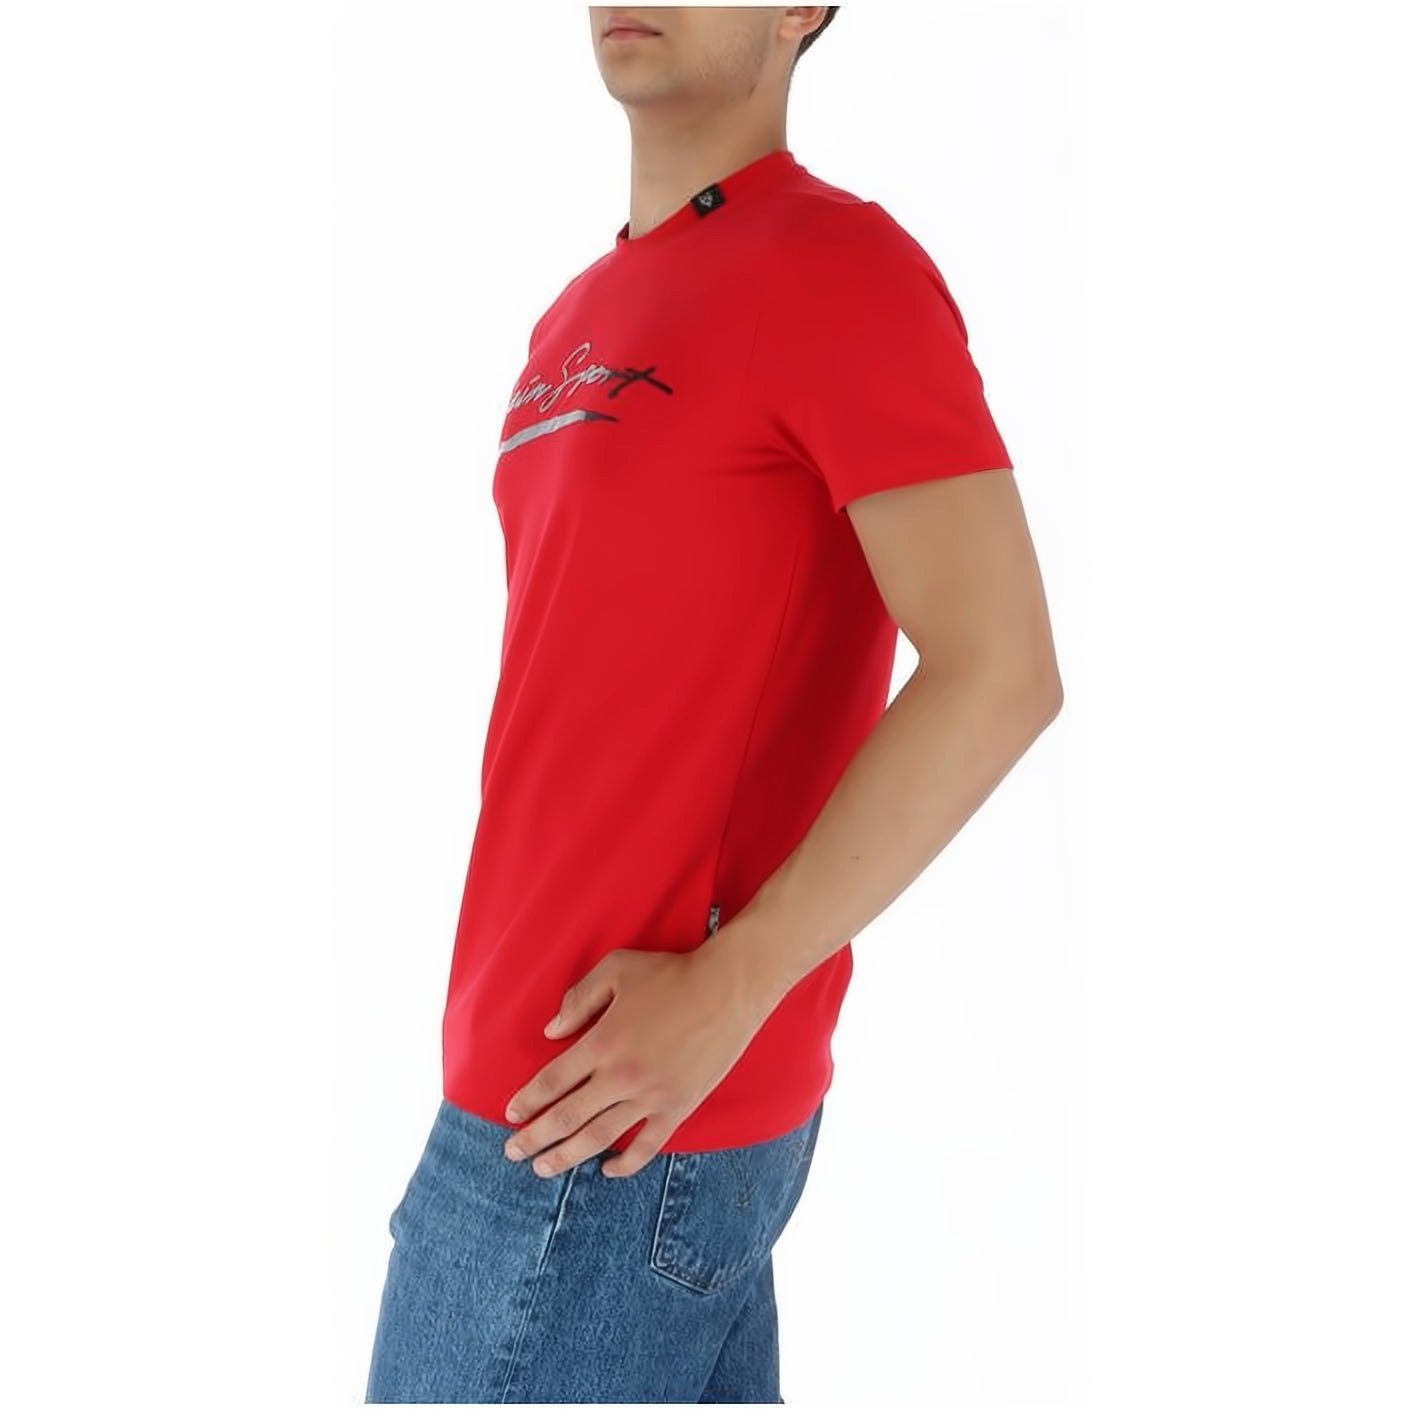 Stylischer T-Shirt PLEIN NECK vielfältige ROUND Farbauswahl SPORT Tragekomfort, hoher Look,